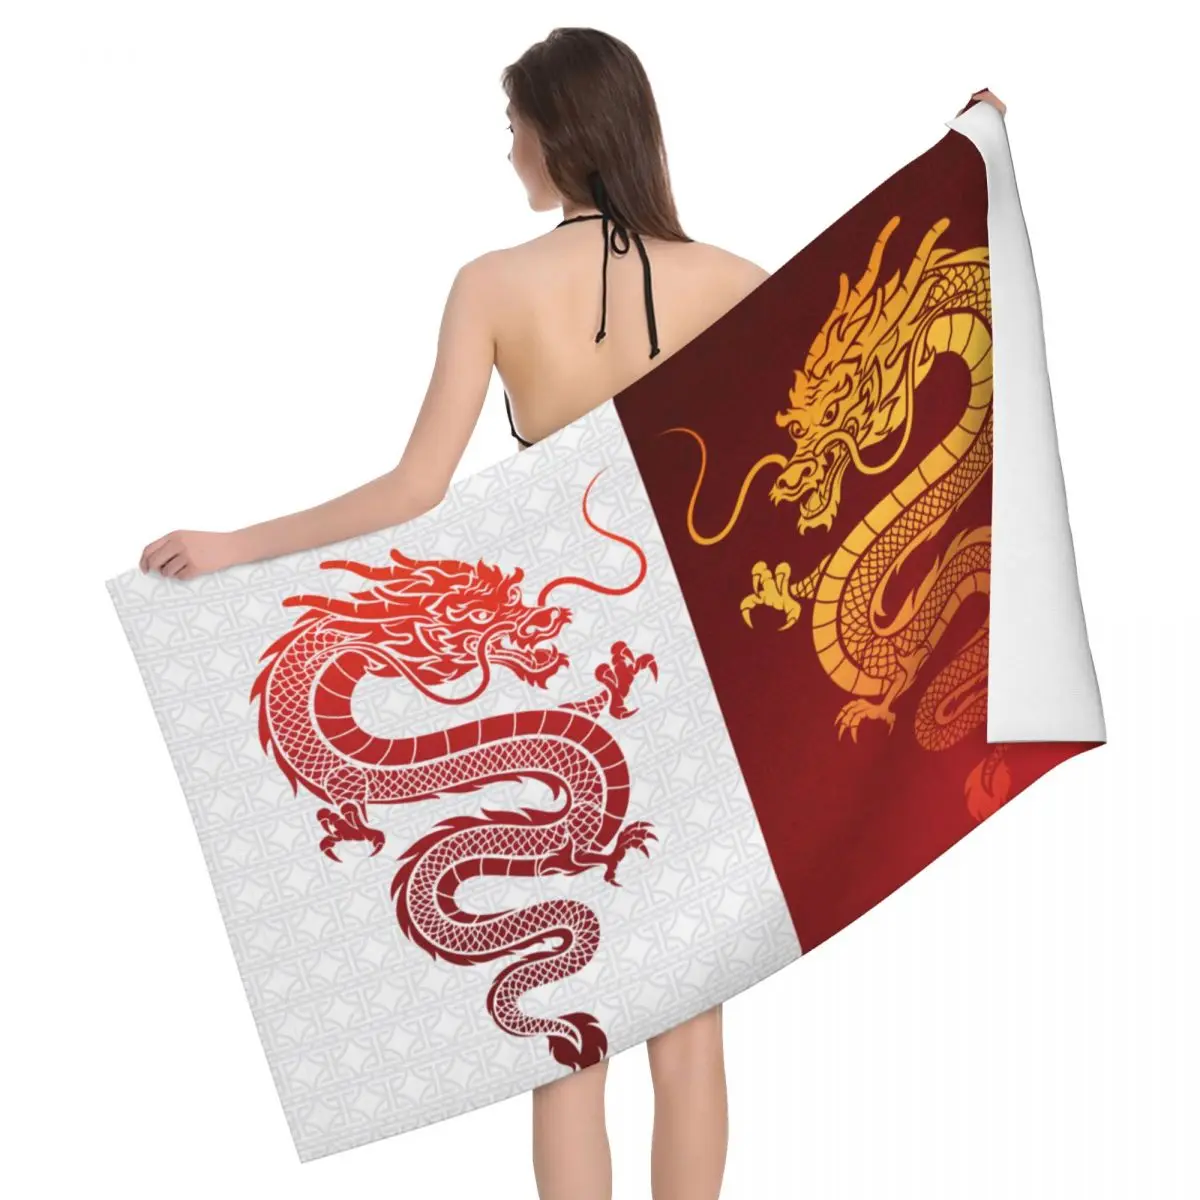 

Азиатское традиционное супермягкое банное пляжное полотенце из микрофибры с драконом тотем, быстросохнущее полотенце для душа и йоги с китайской мифологией